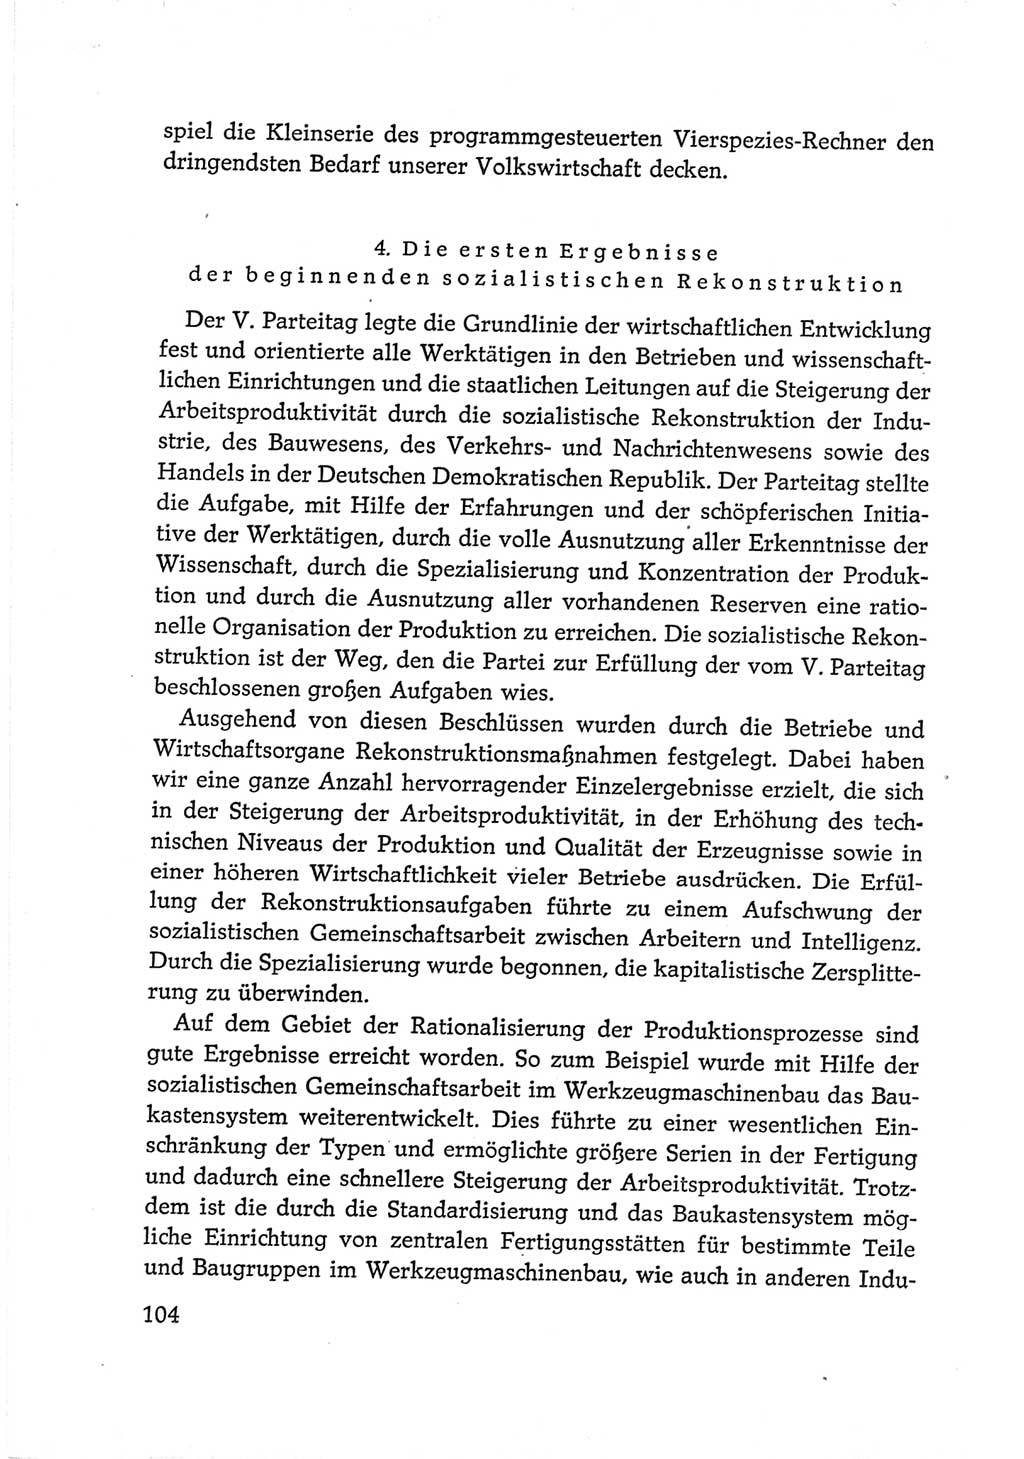 Protokoll der Verhandlungen des Ⅵ. Parteitages der Sozialistischen Einheitspartei Deutschlands (SED) [Deutsche Demokratische Republik (DDR)] 1963, Band Ⅳ, Seite 104 (Prot. Verh. Ⅵ. PT SED DDR 1963, Bd. Ⅳ, S. 104)